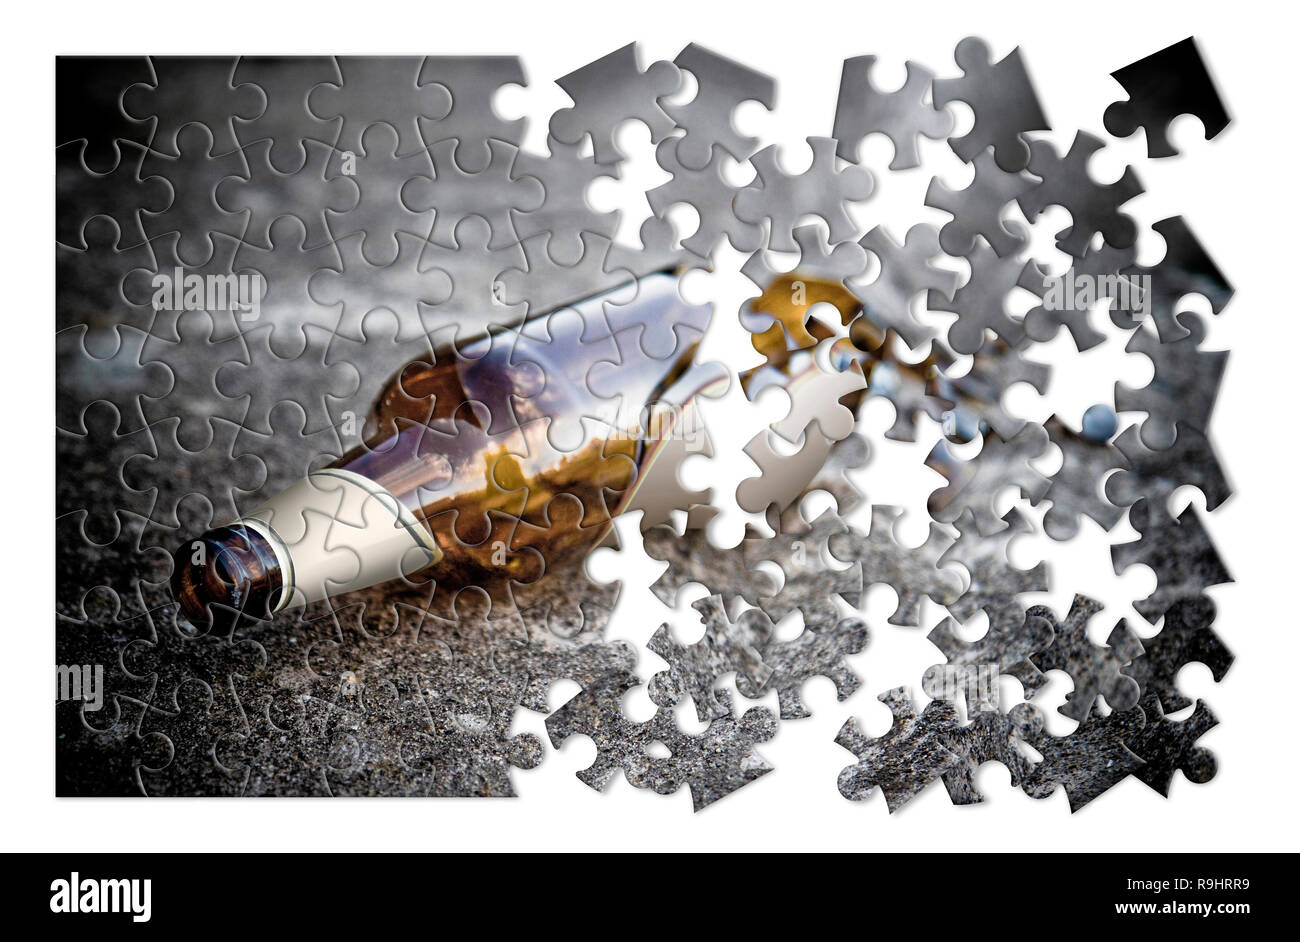 Puzzle einer zerbrochenen Flasche Bier auf den Boden - befreien sich von  Alkoholabhängigkeit - Konzept Bild-Getonten Bild Stockfotografie - Alamy